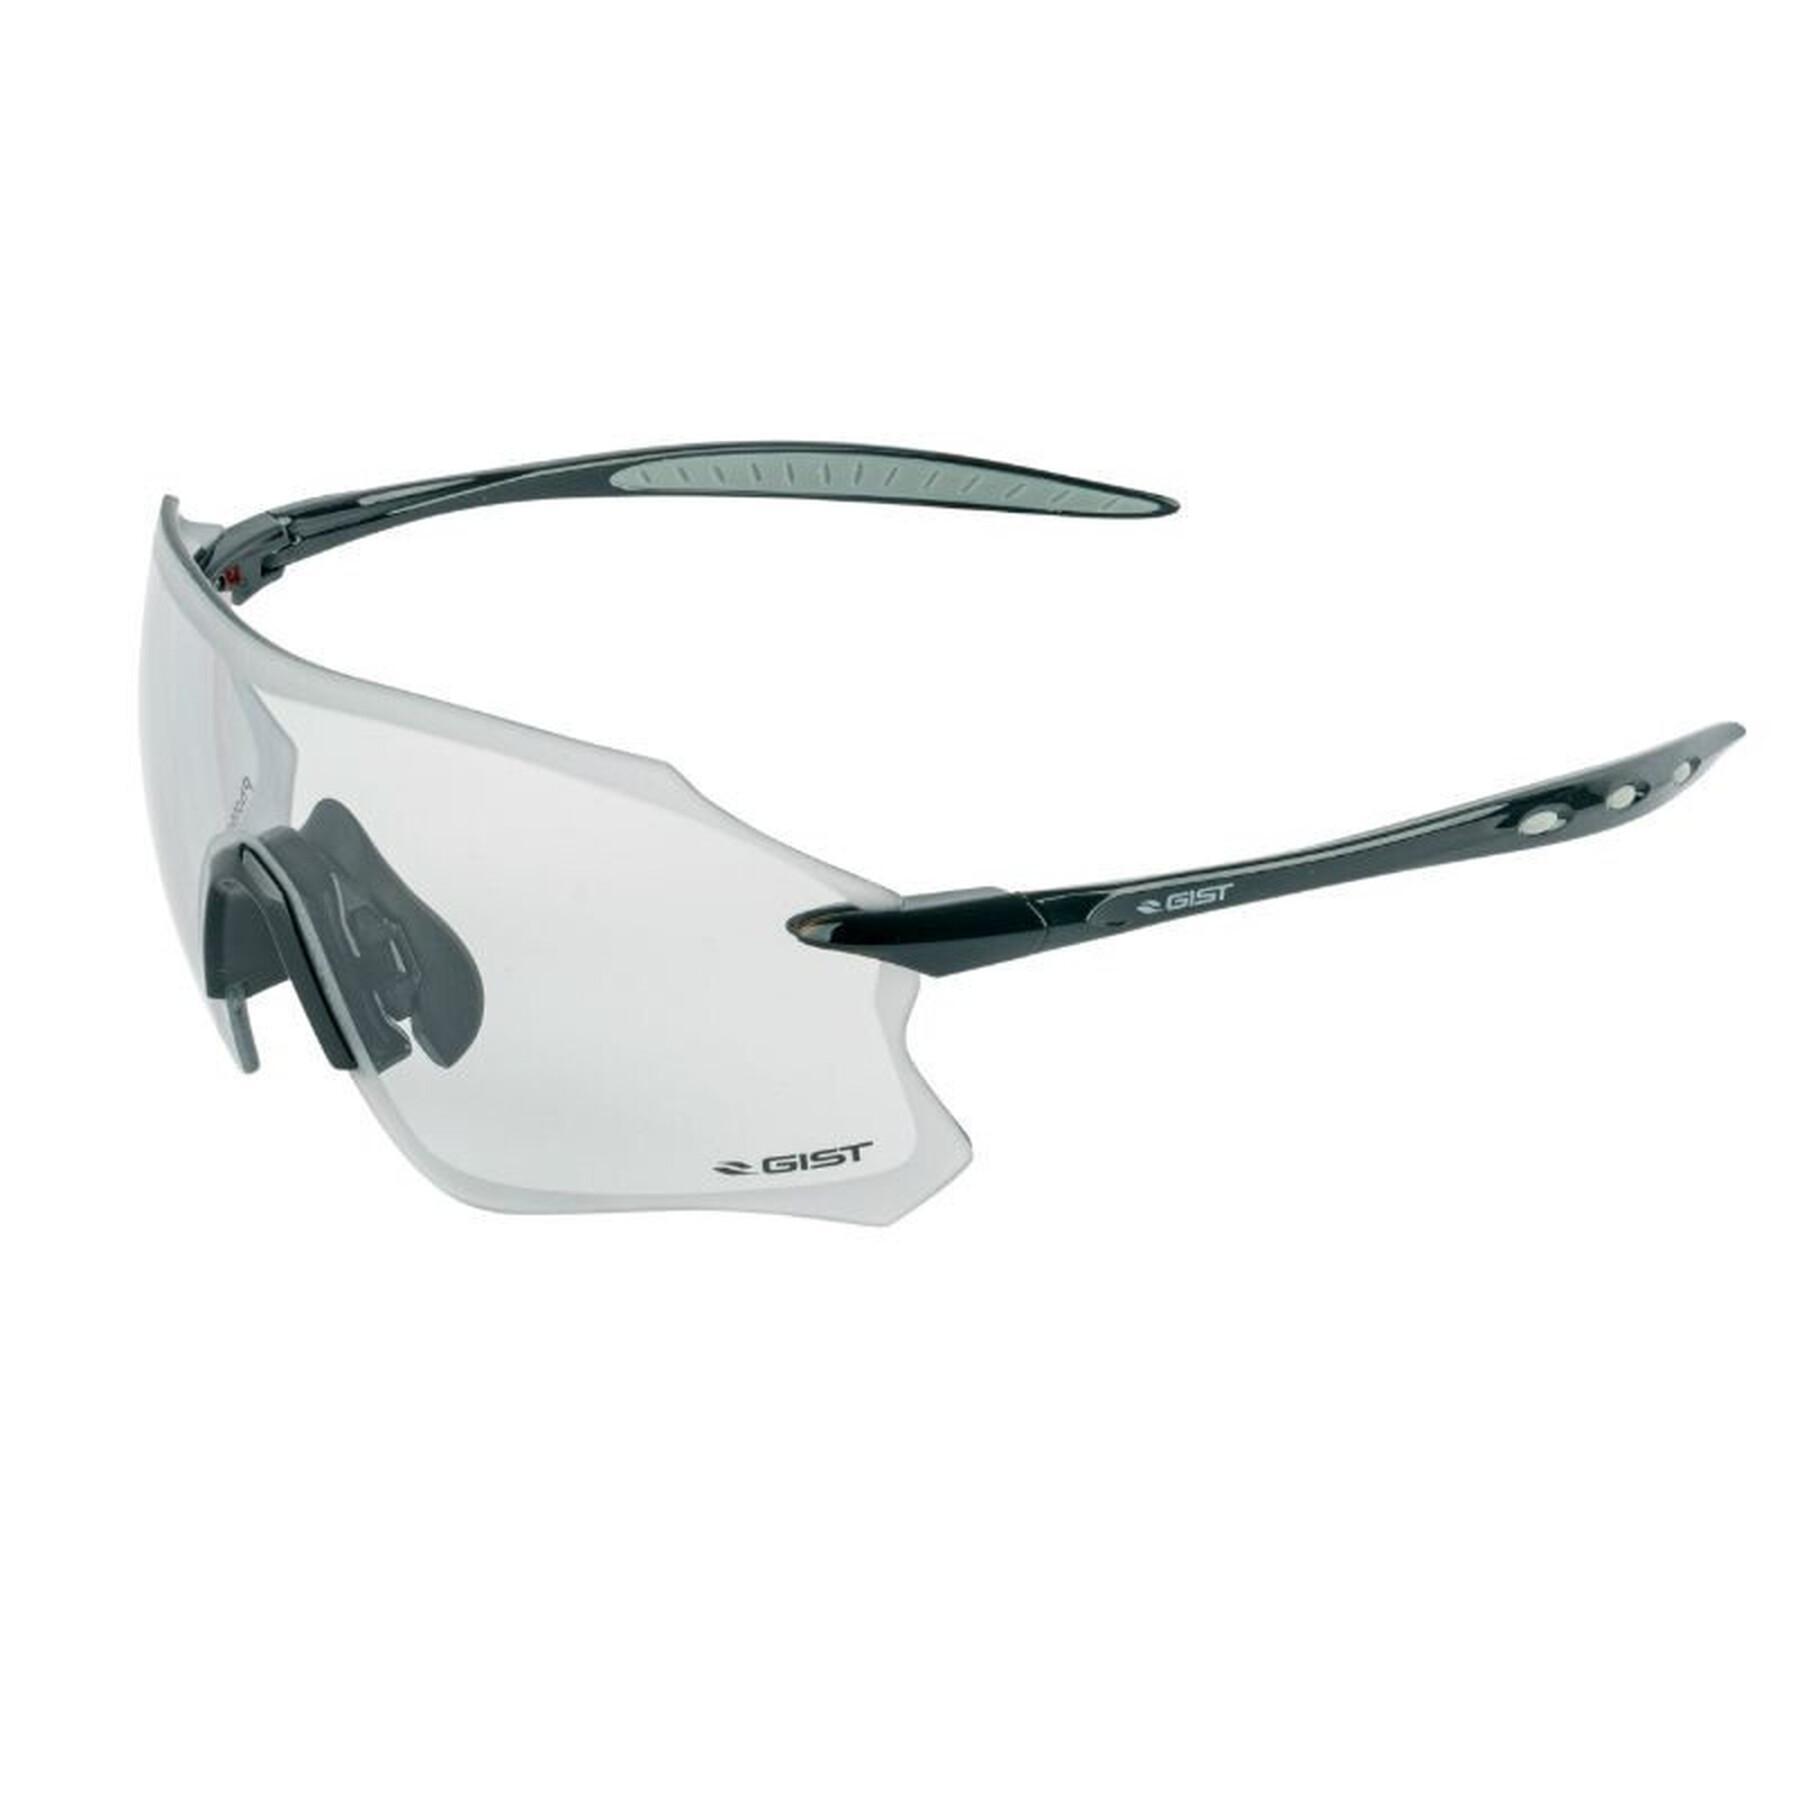 Occhiali da ciclismo montatura lenti fotocromatiche che si adattano  automaticamente alla luce - Gist Pack ultraleggero - Occhiali - Protezioni  - Abbigliamento